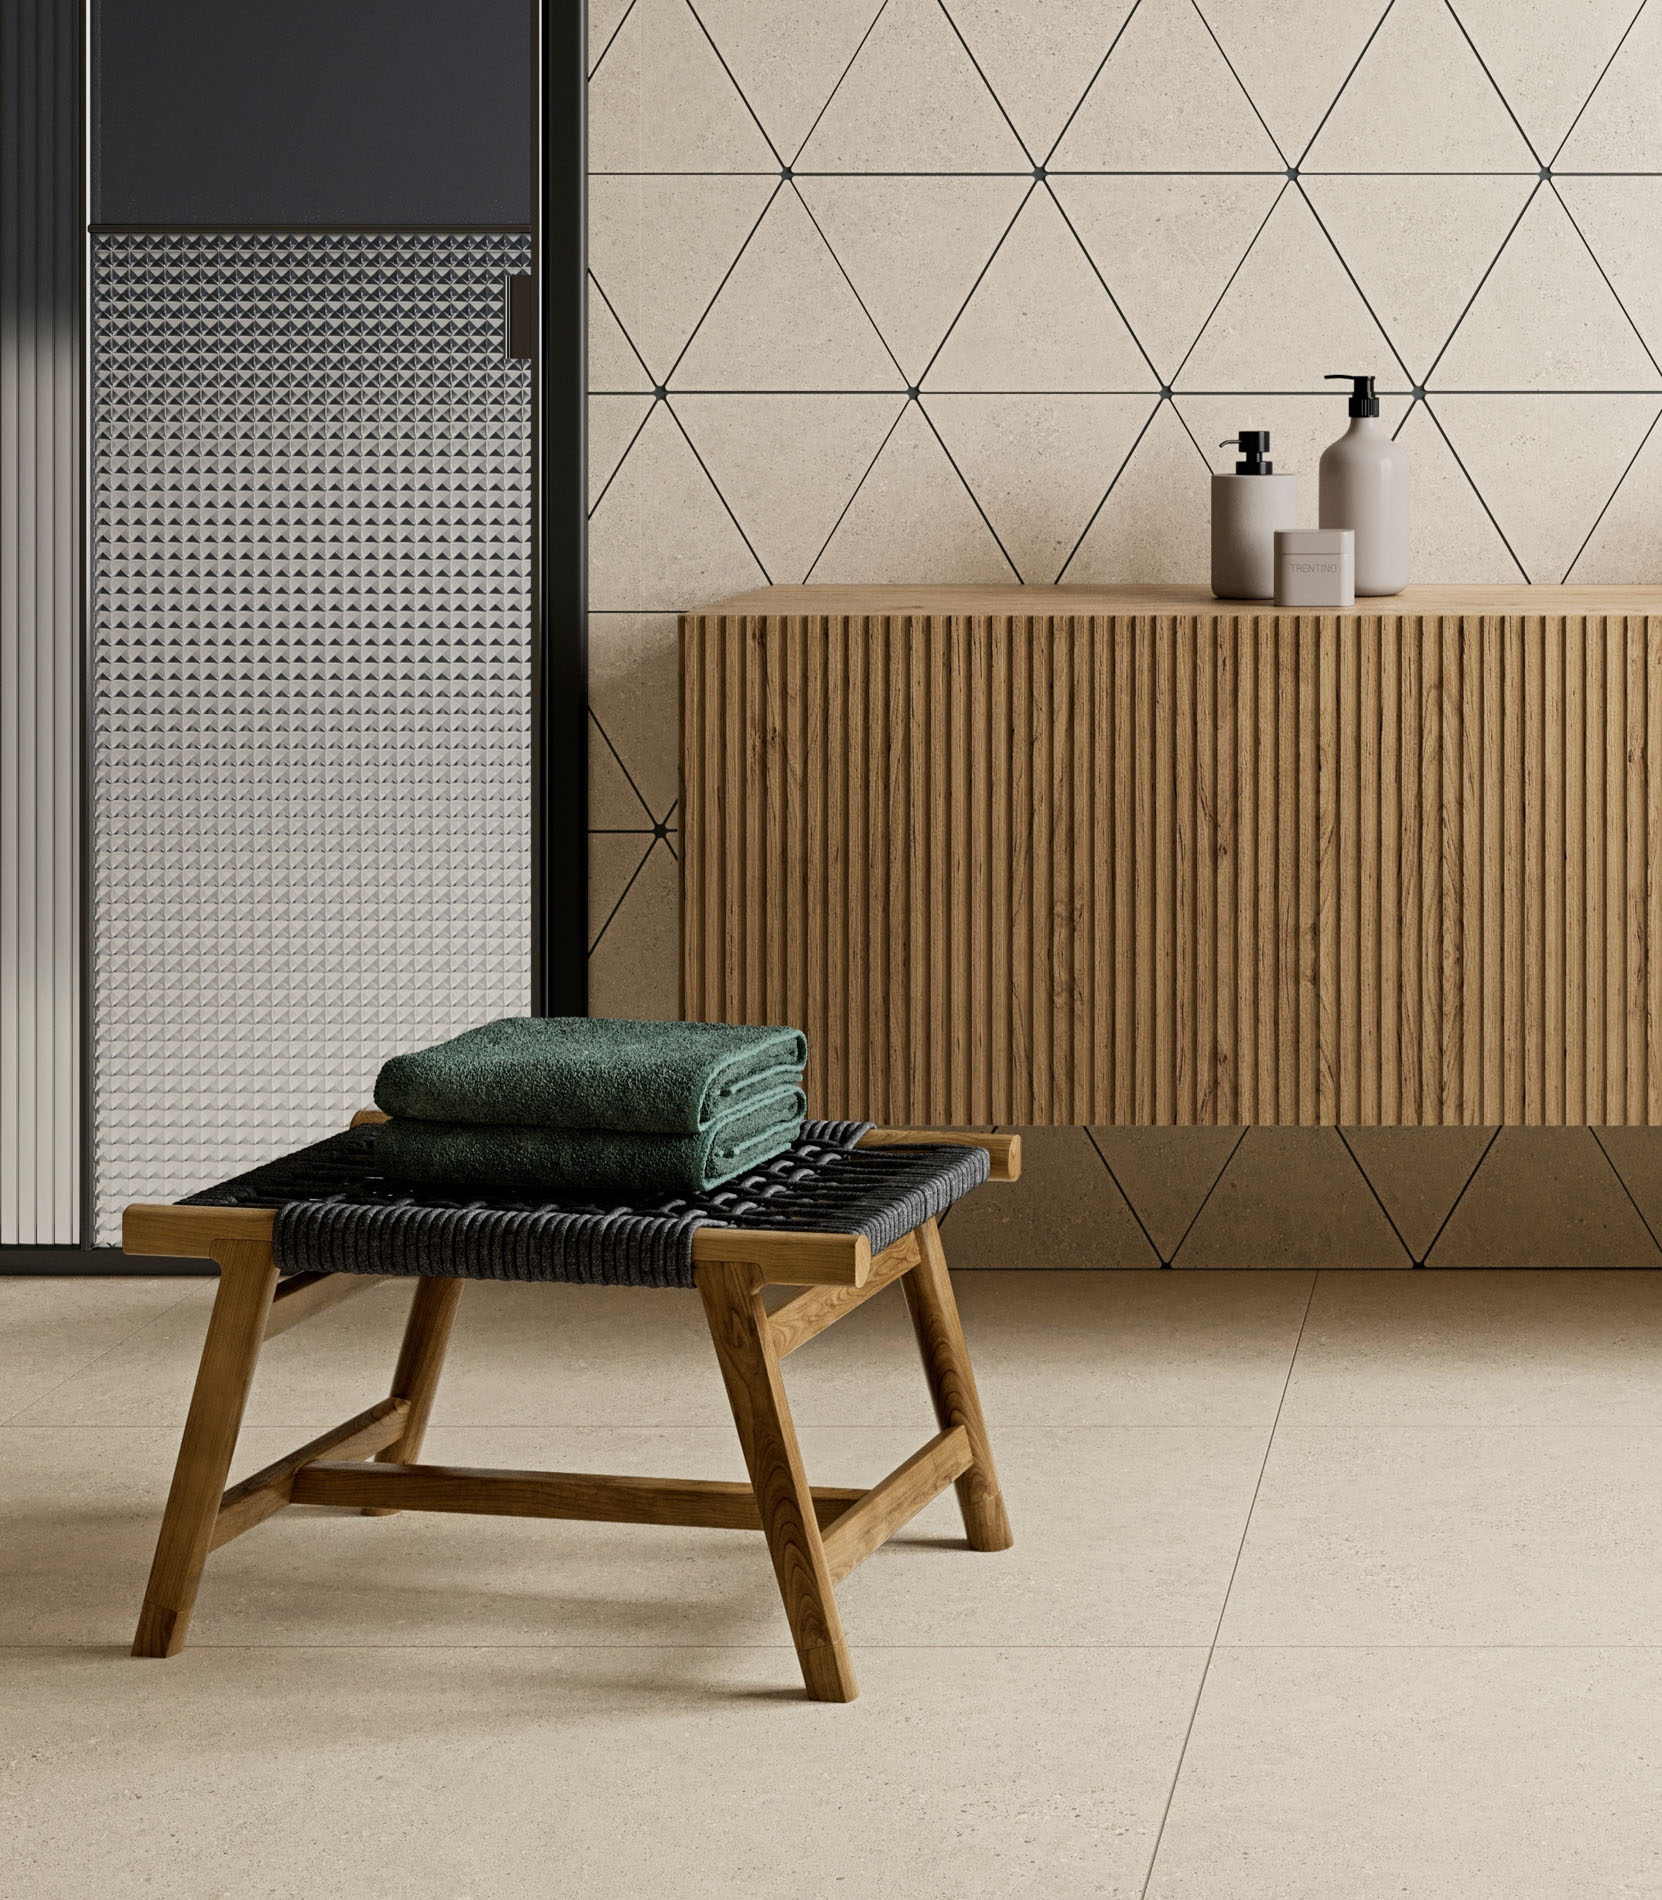 Colección de mobiliario para baño que busca la relajación y elegancia en la repetición